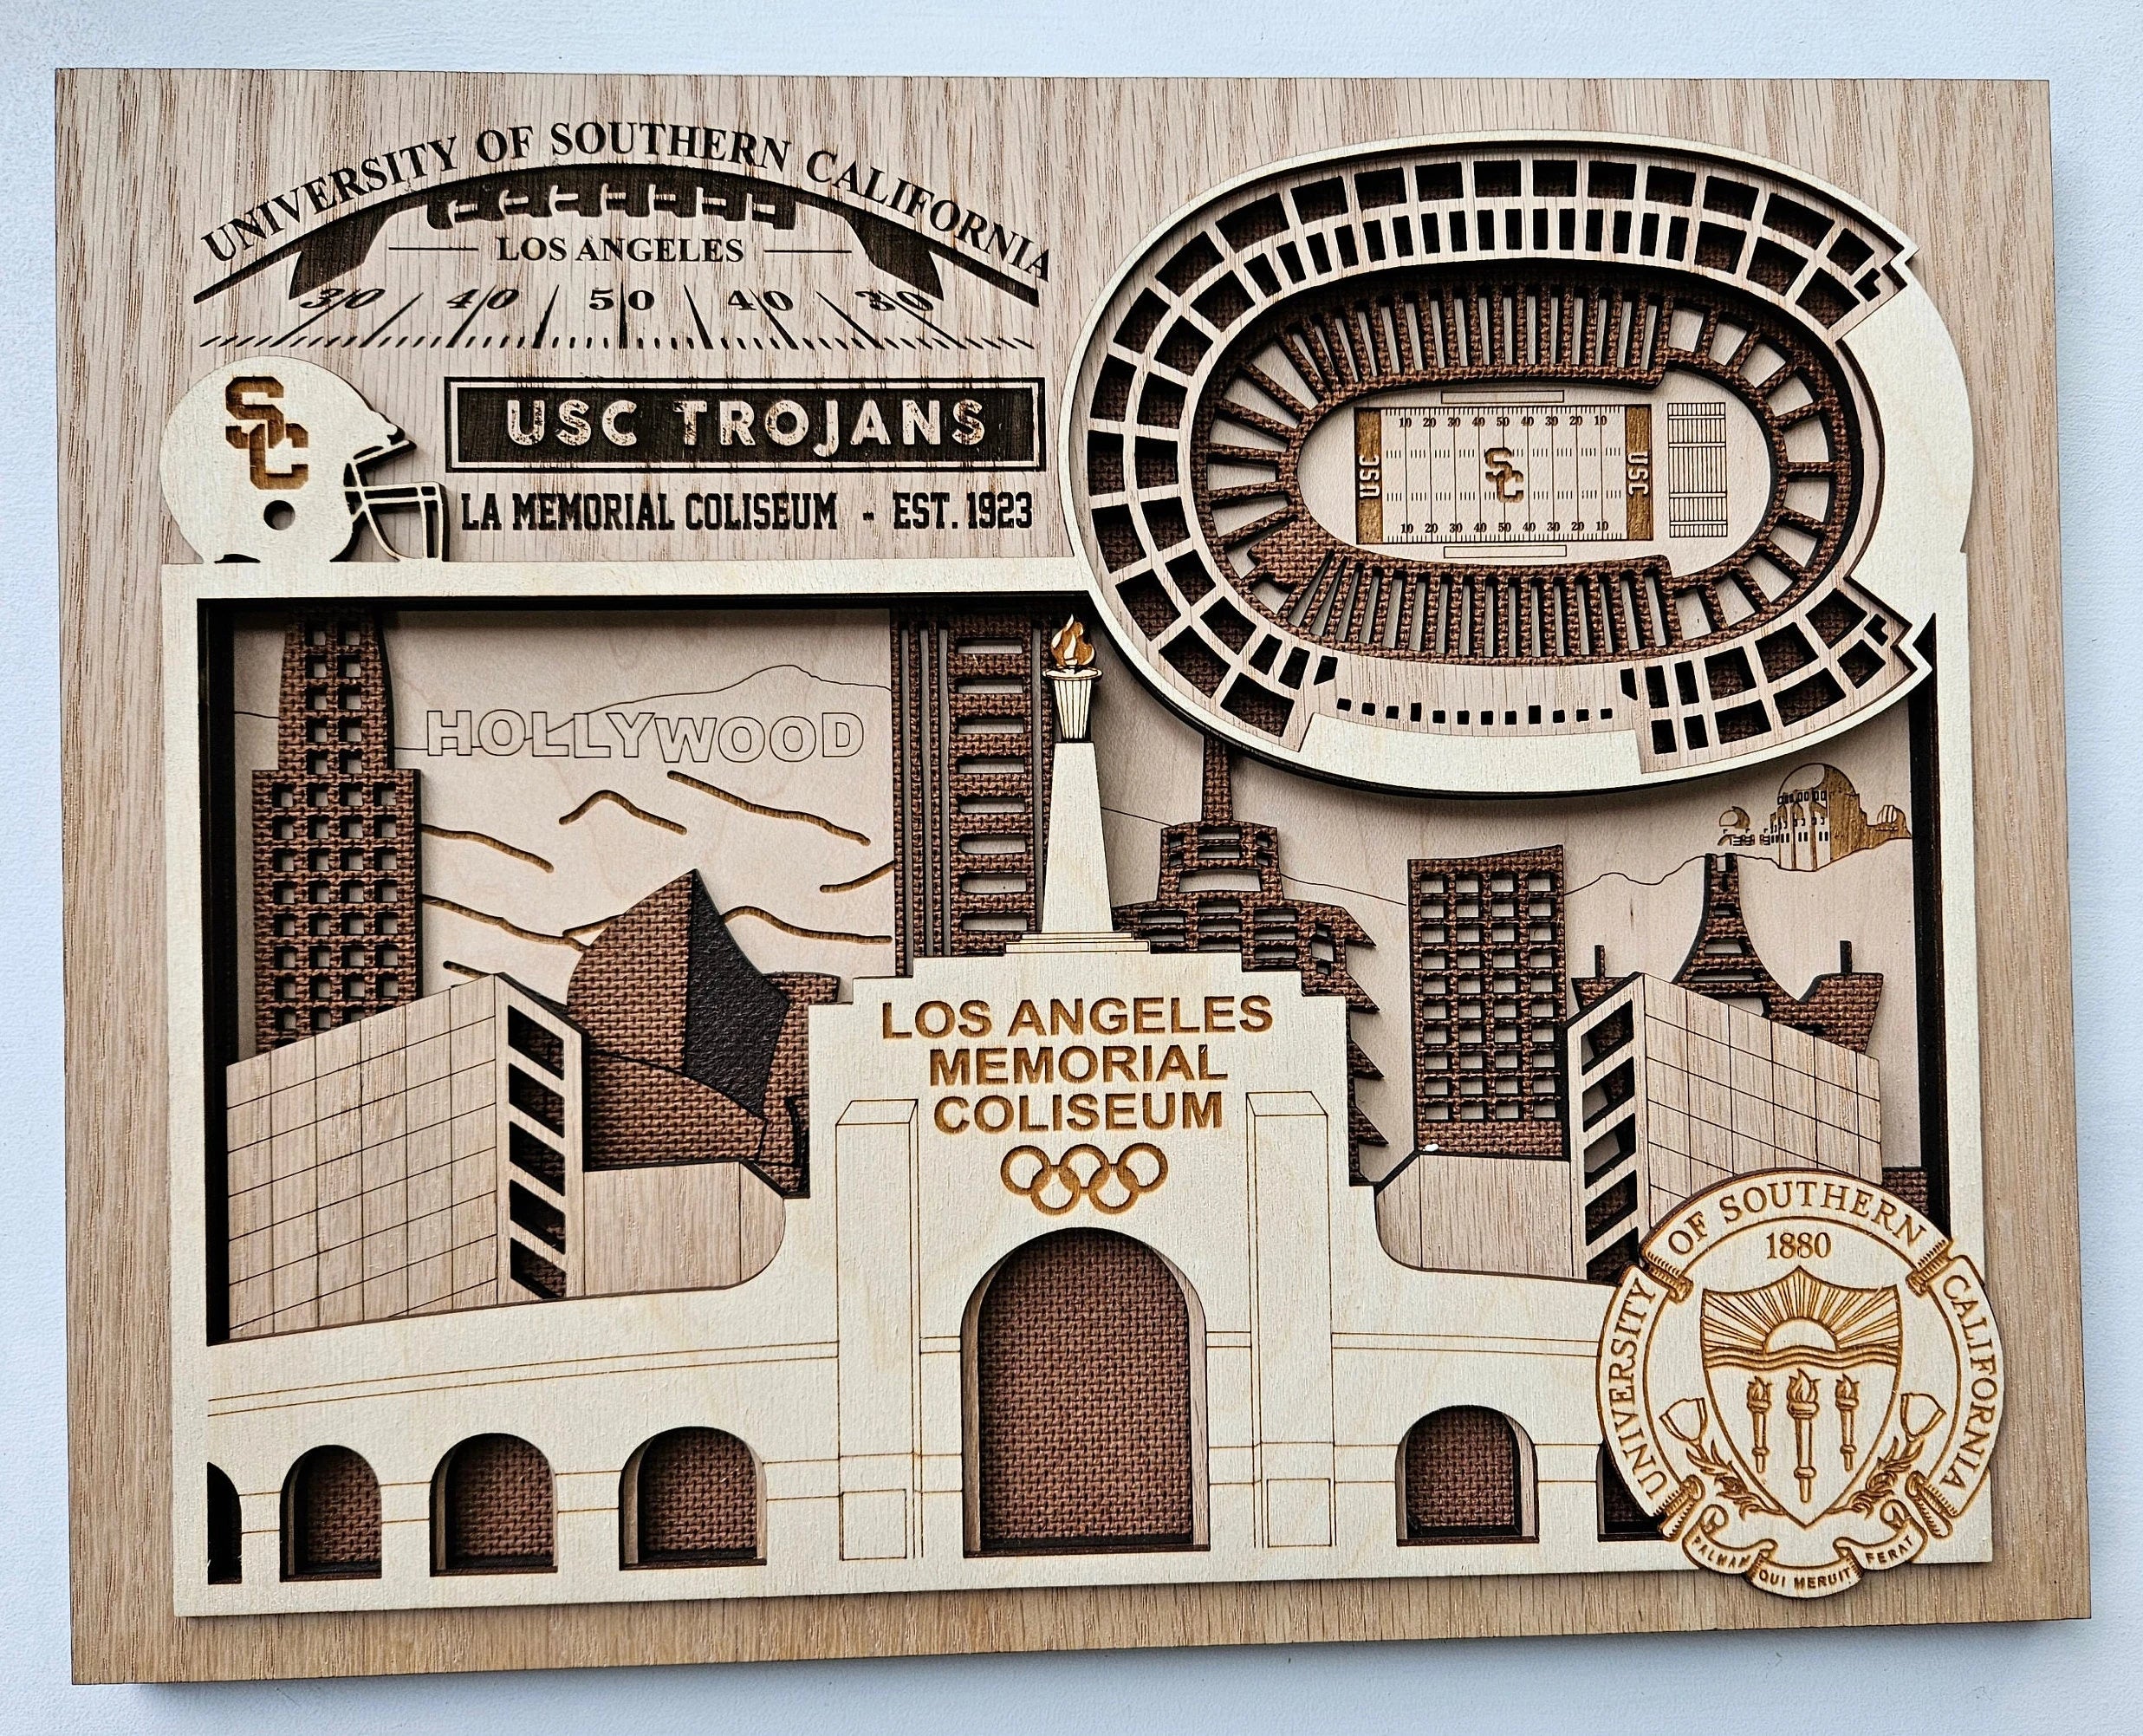 LA Memorial Coliseum - Home of USC Trojans